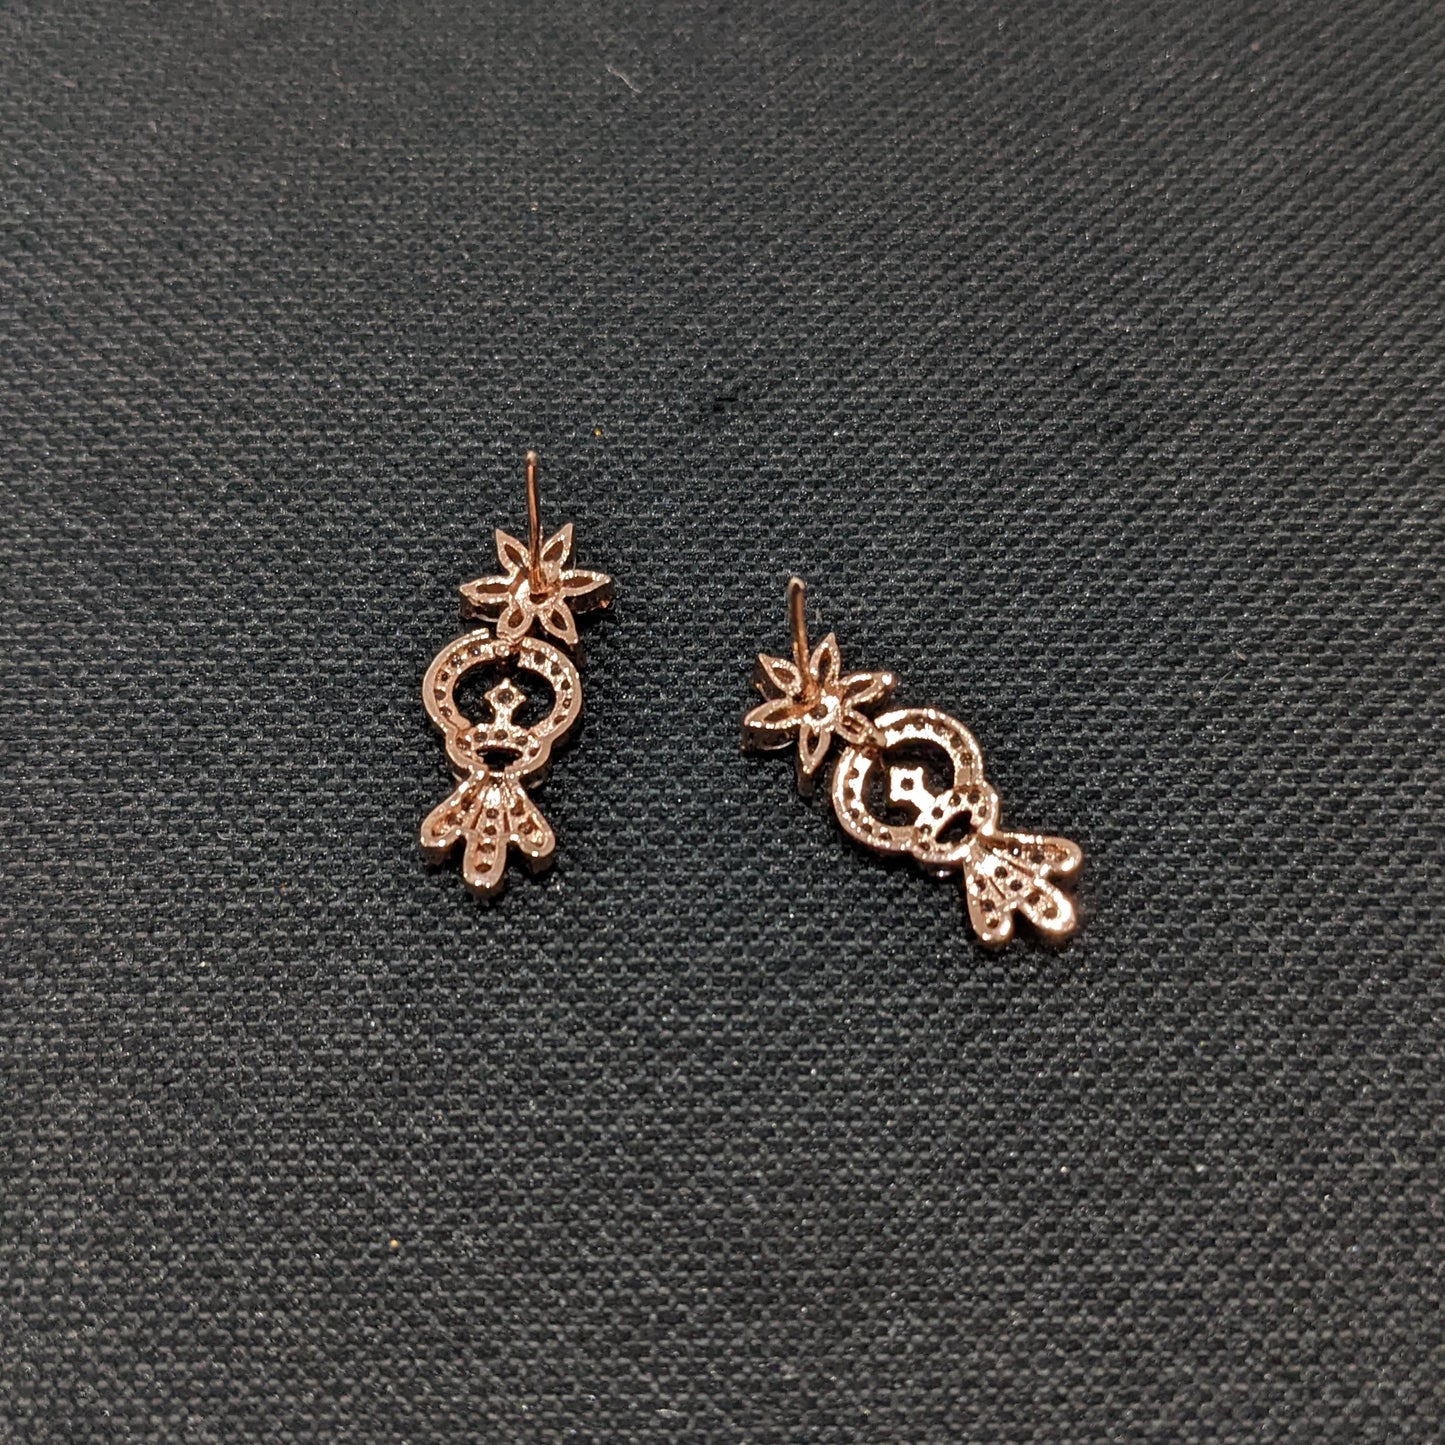 Flower design Rose gold plated CZ Earrings